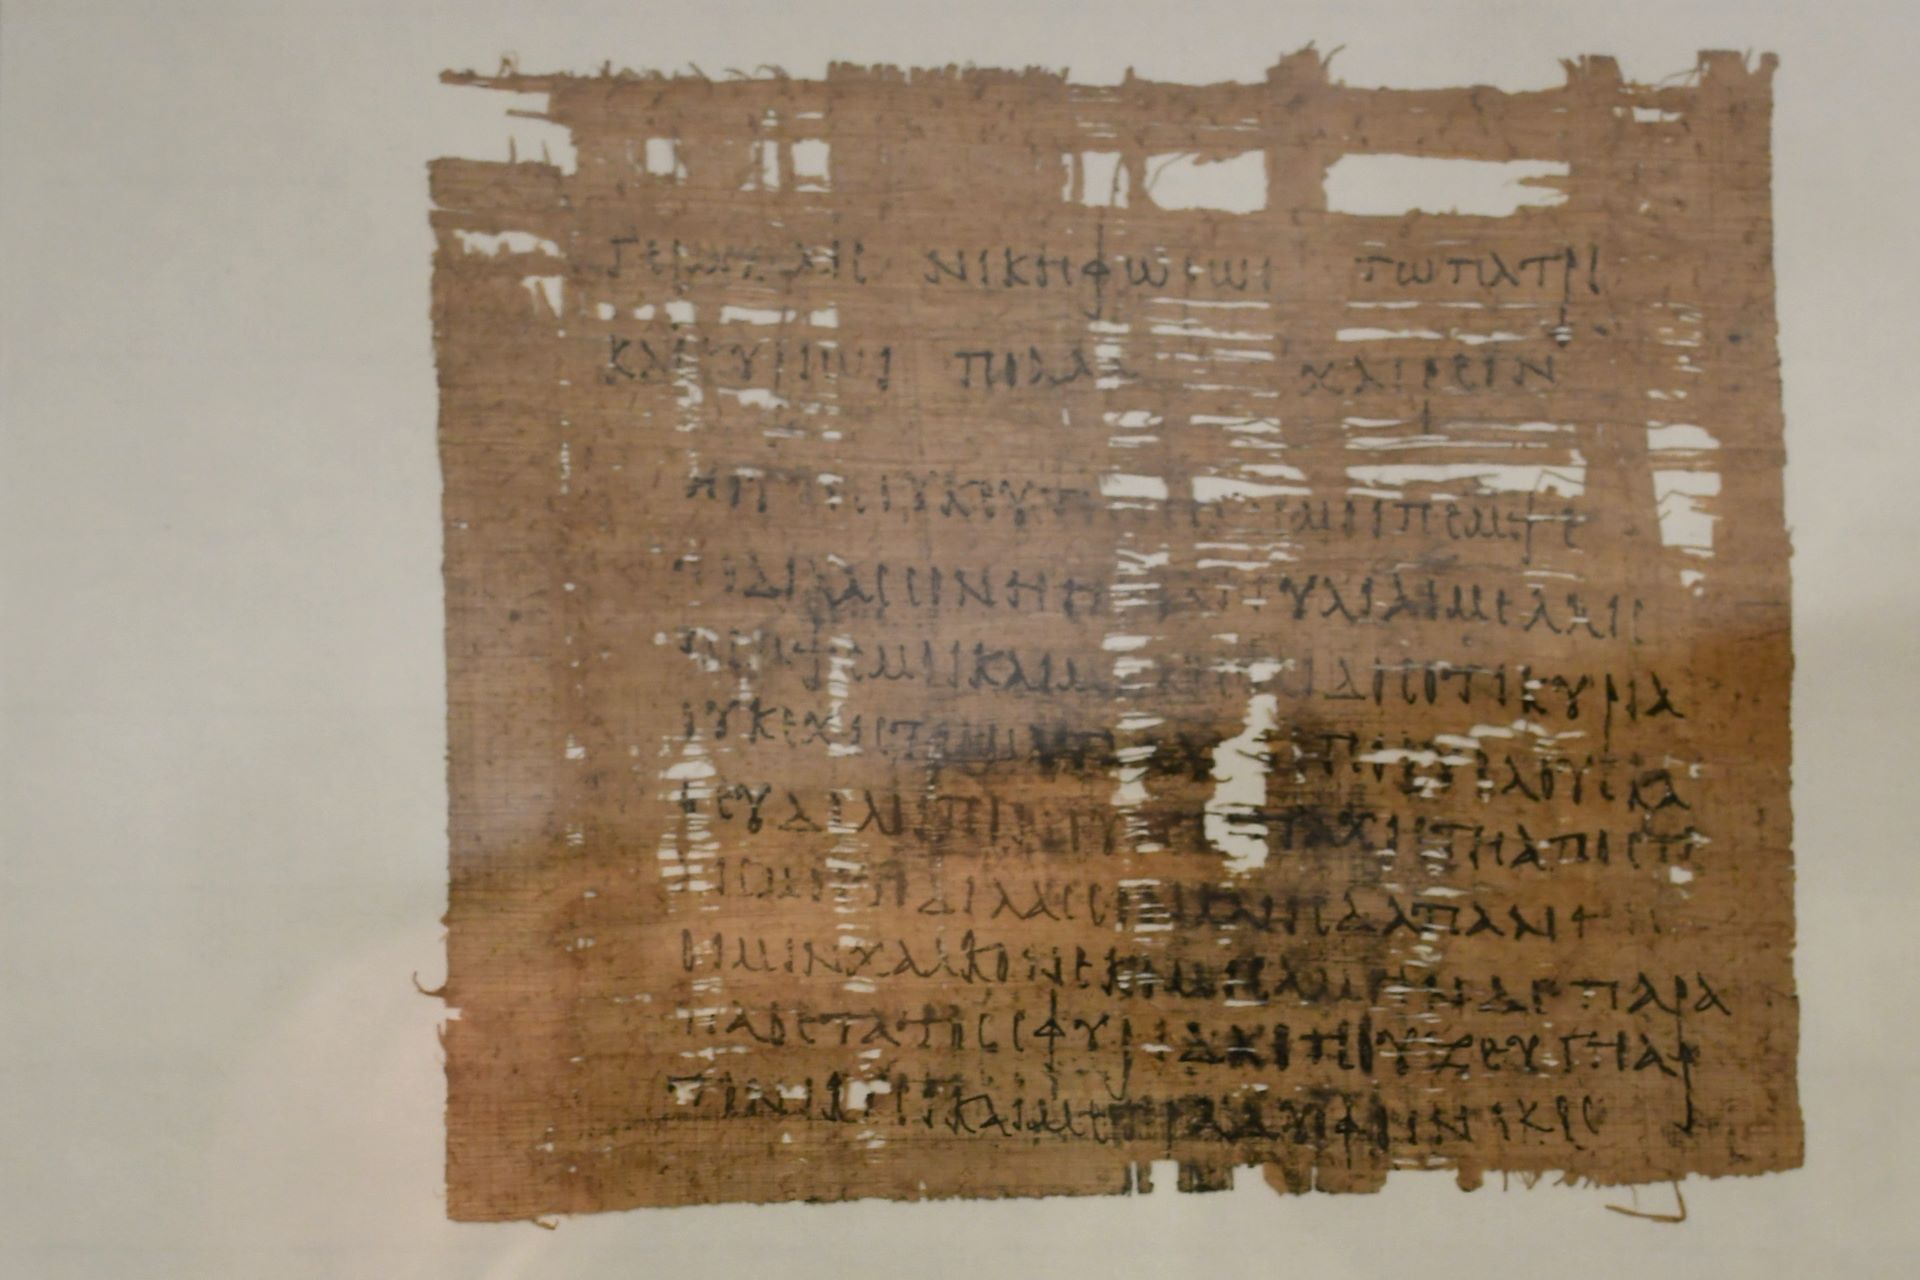 blog:2018-11-17-texte-aus-ferner-zeit:2018-11-17-wien-papyrusmuseum-120b.jpg